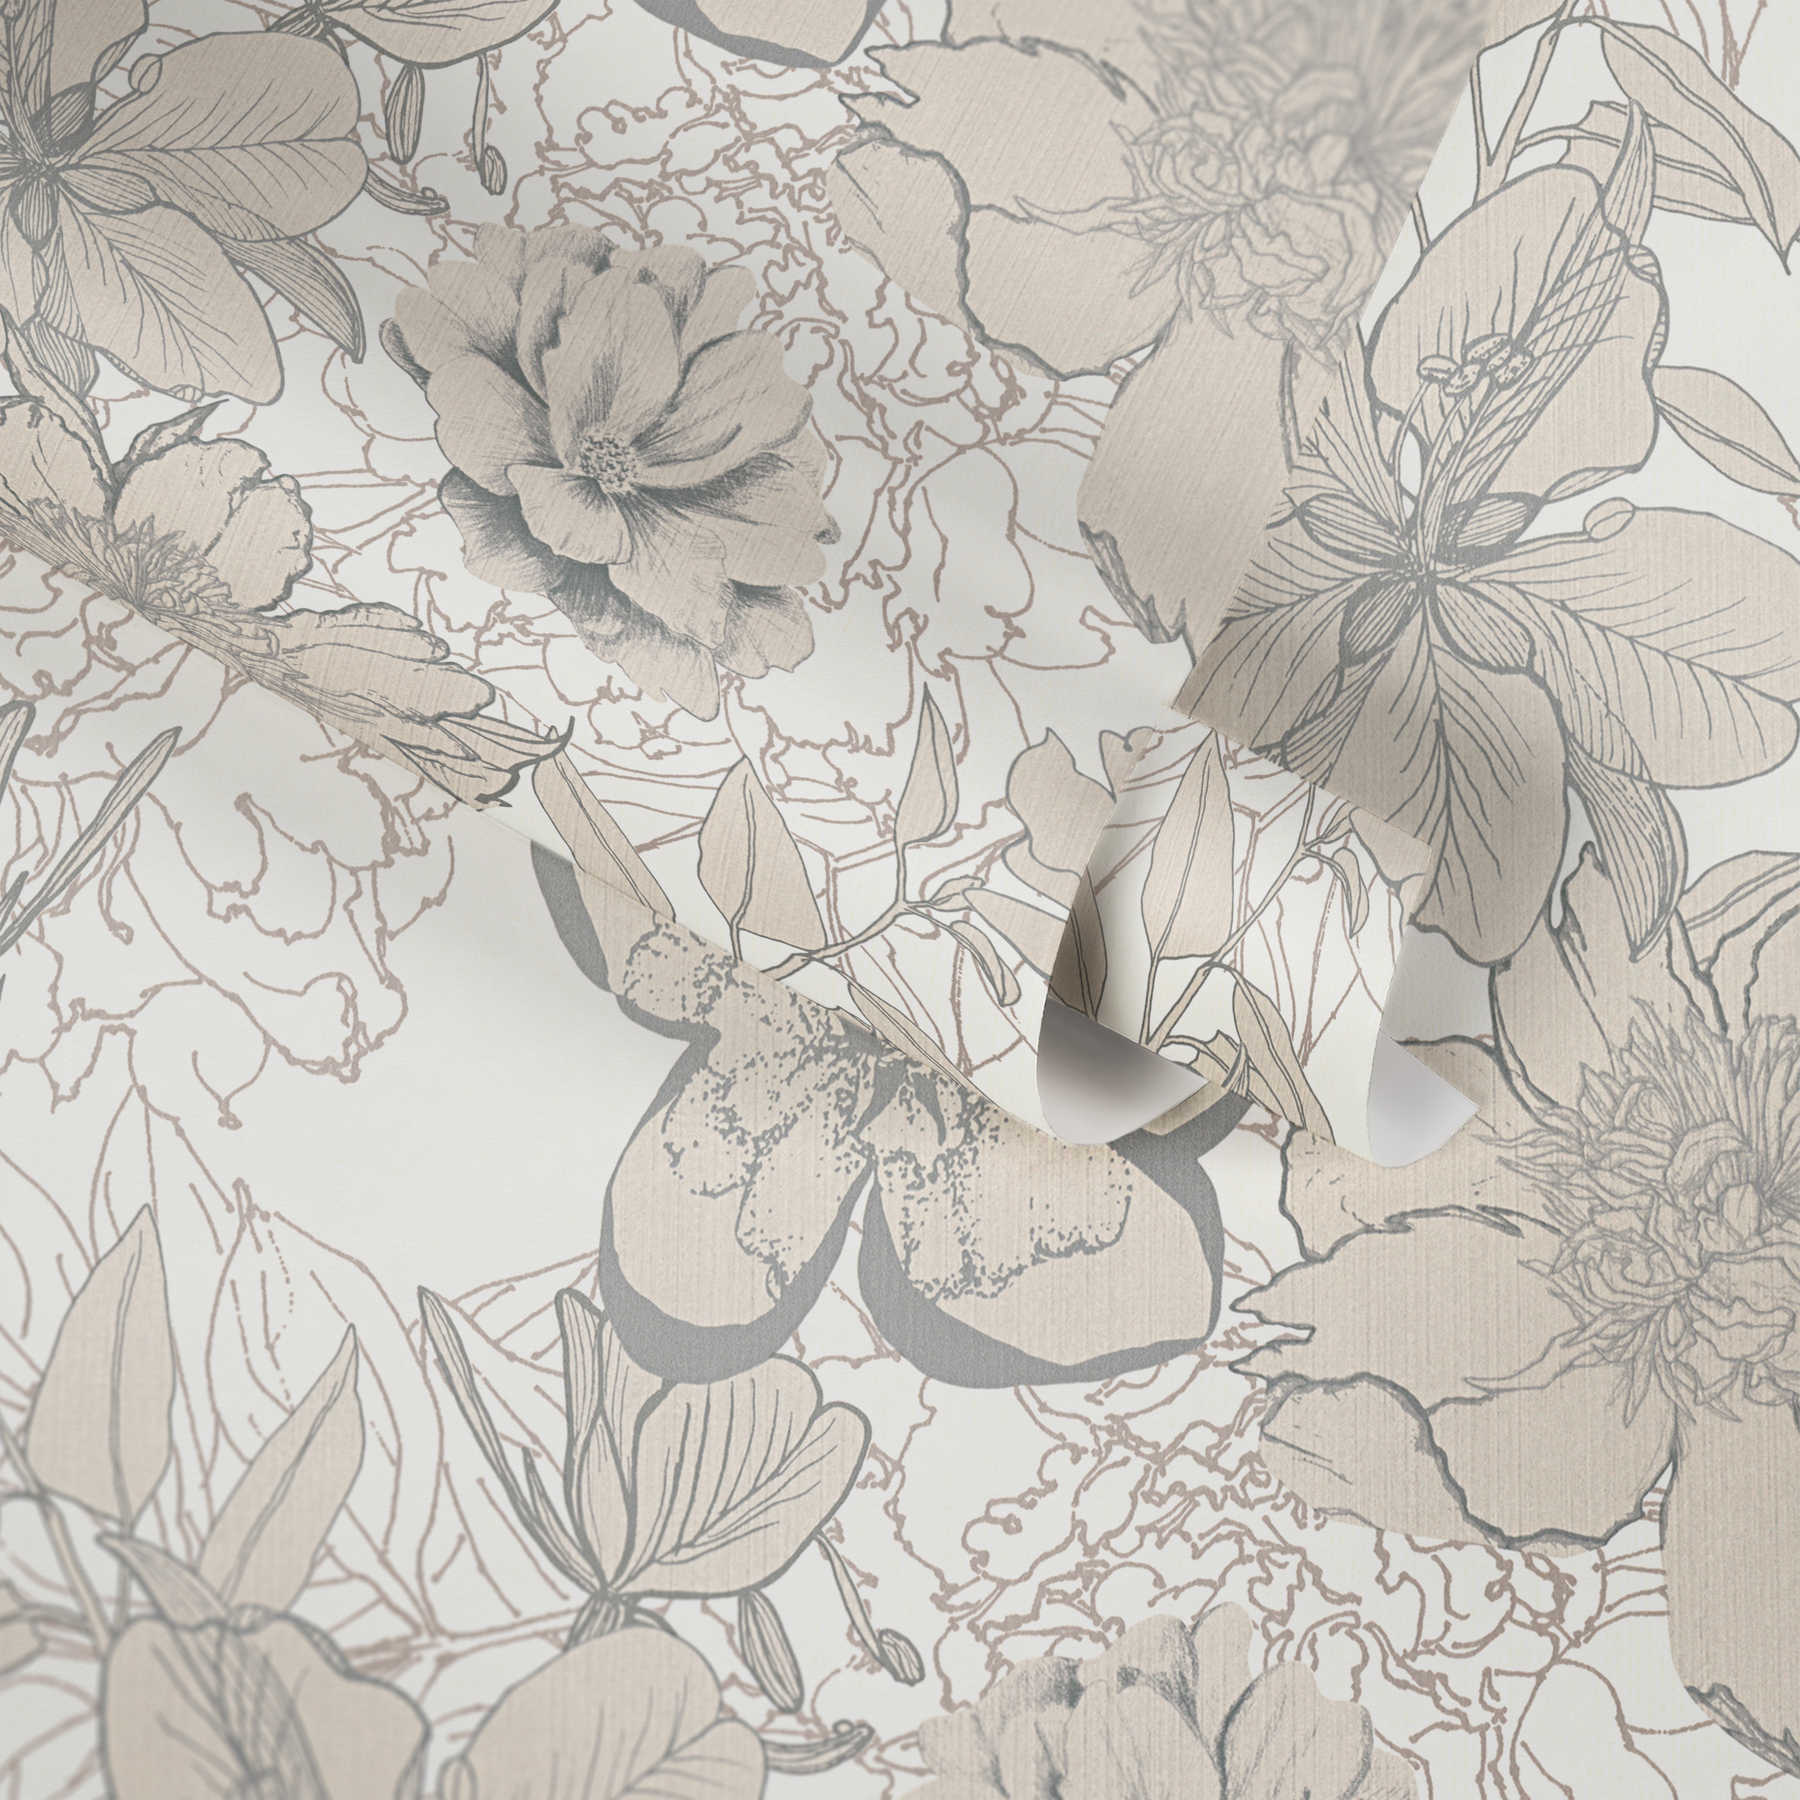             Blumentapete mit Blüten Skizzen & Metallic Farbe – Creme
        